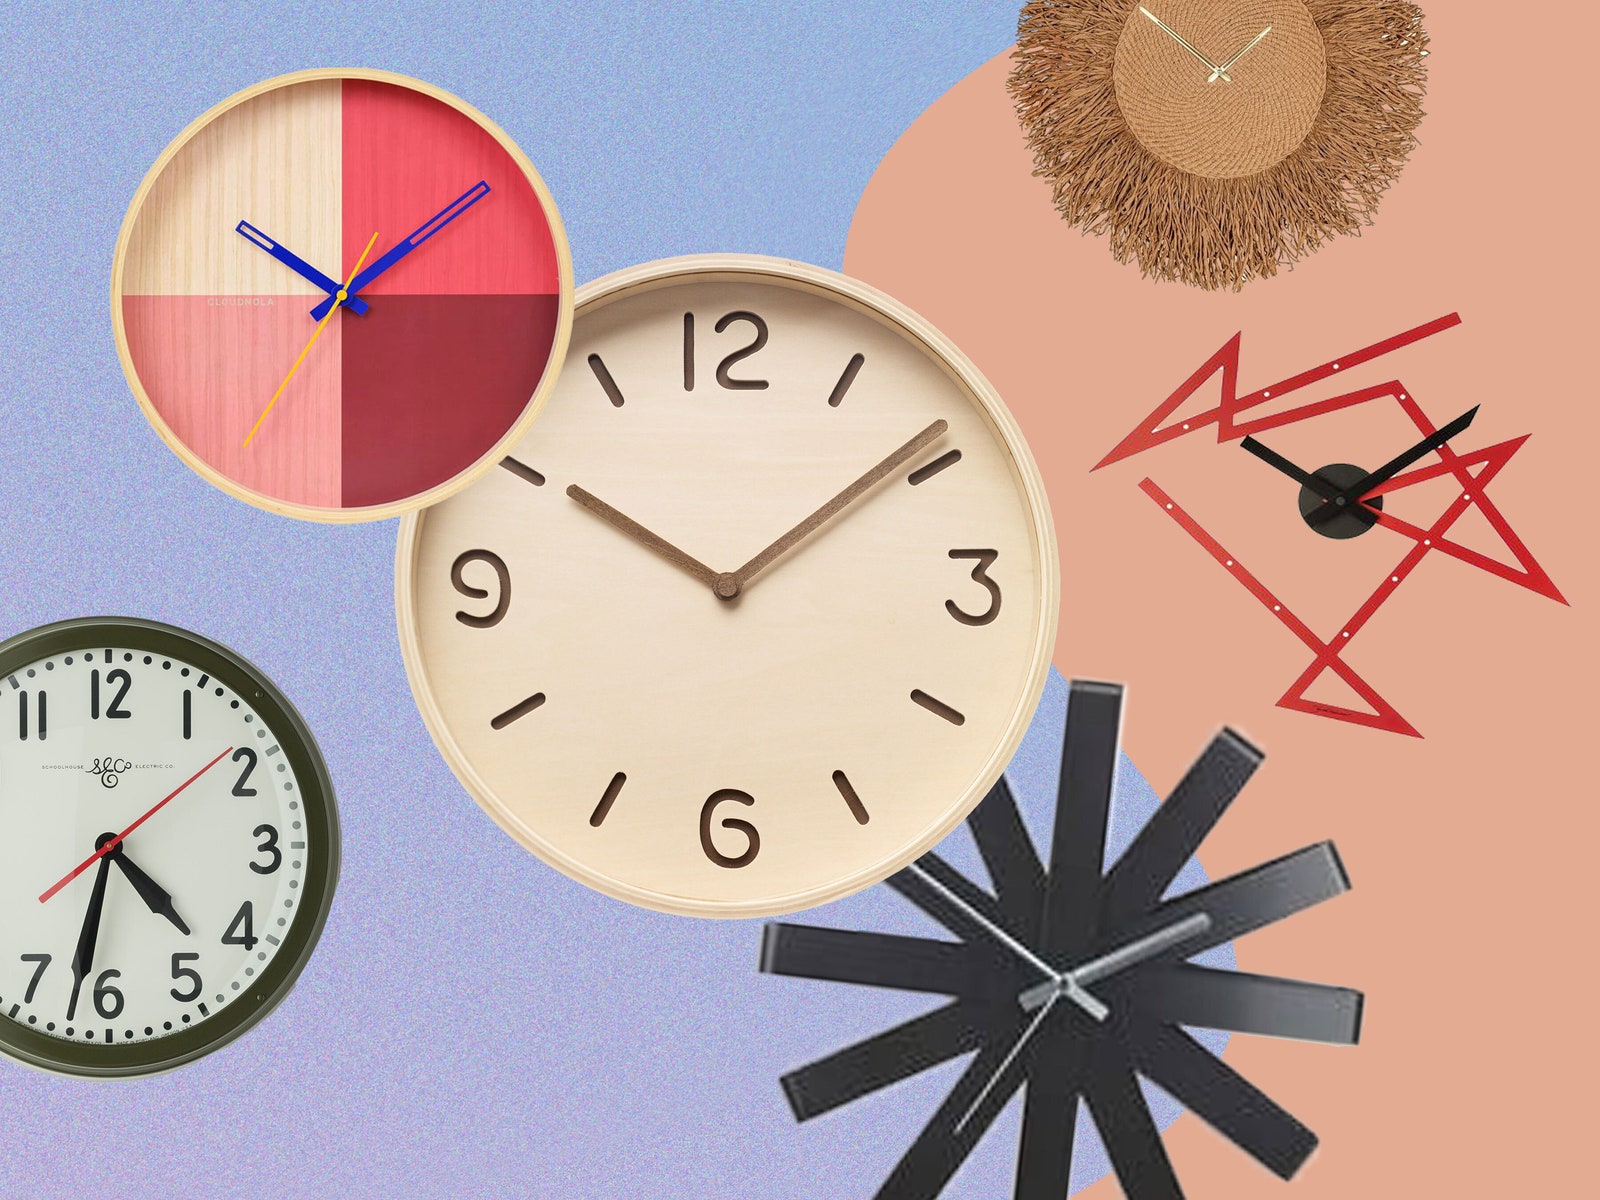 新168幸运飞行艇+幸运飞行艇官方开奖历史记录 25 Best Wall Clocks to Buy Now